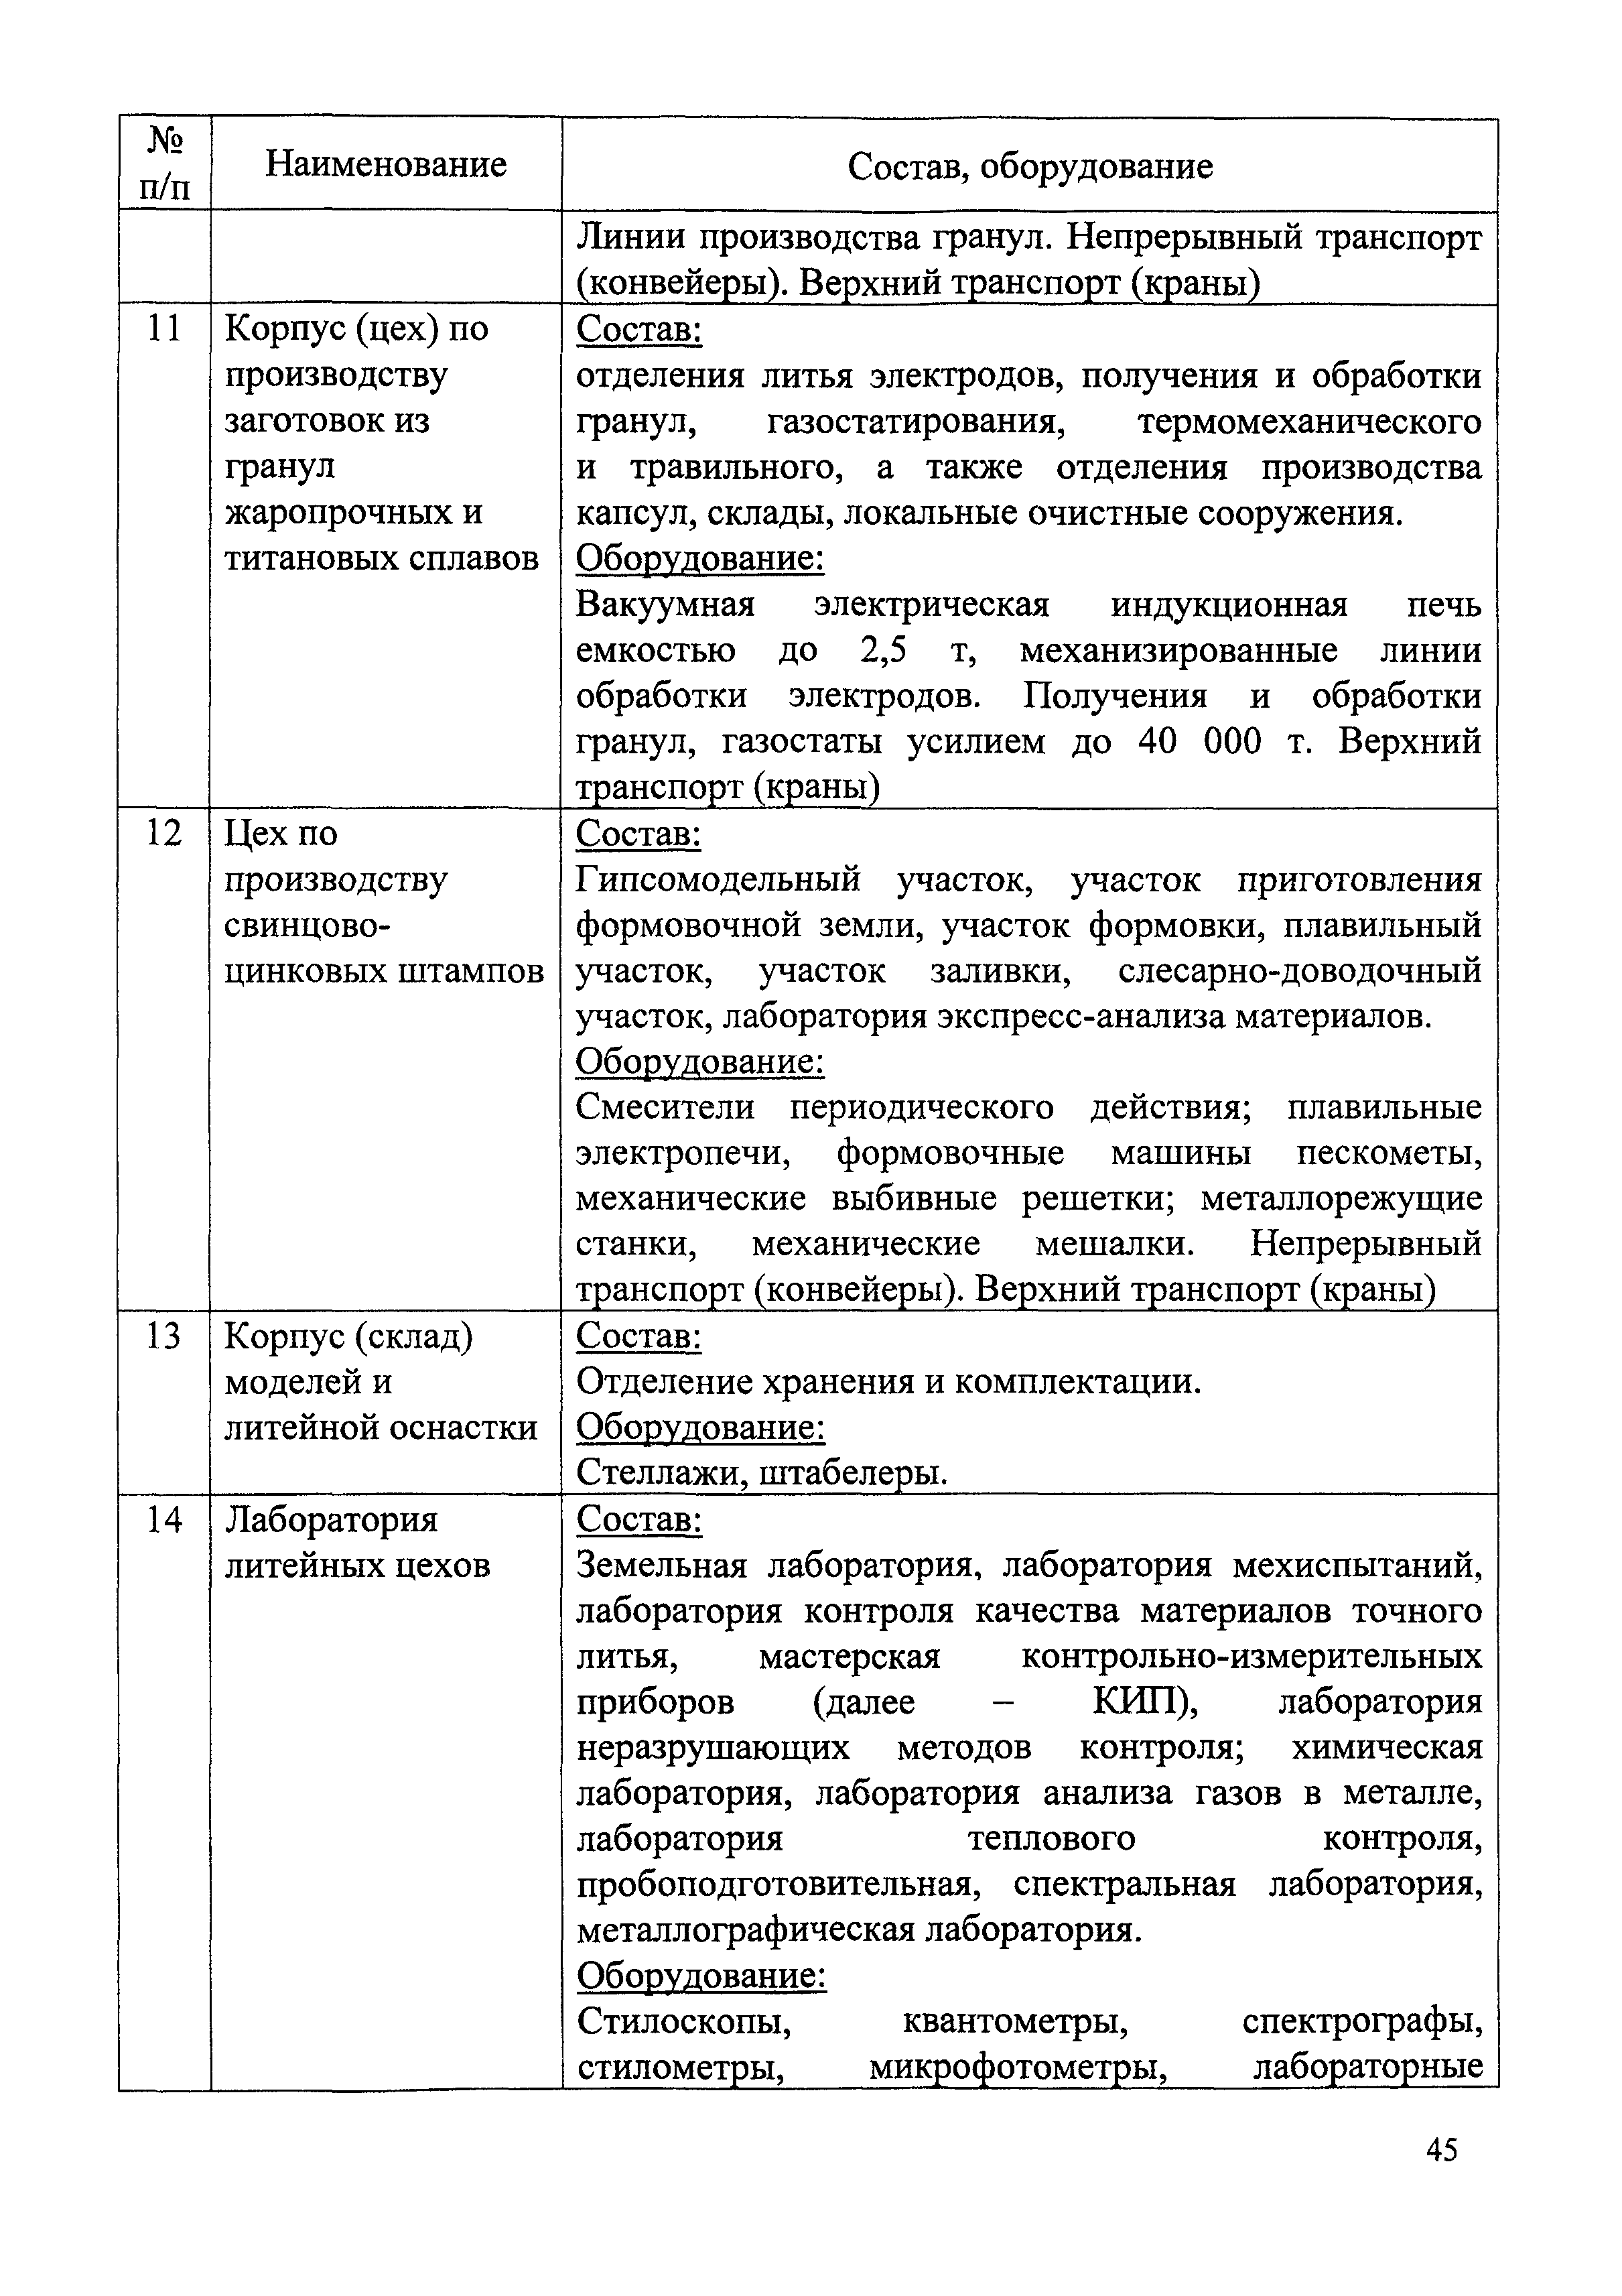 СБЦП 81-2001-04